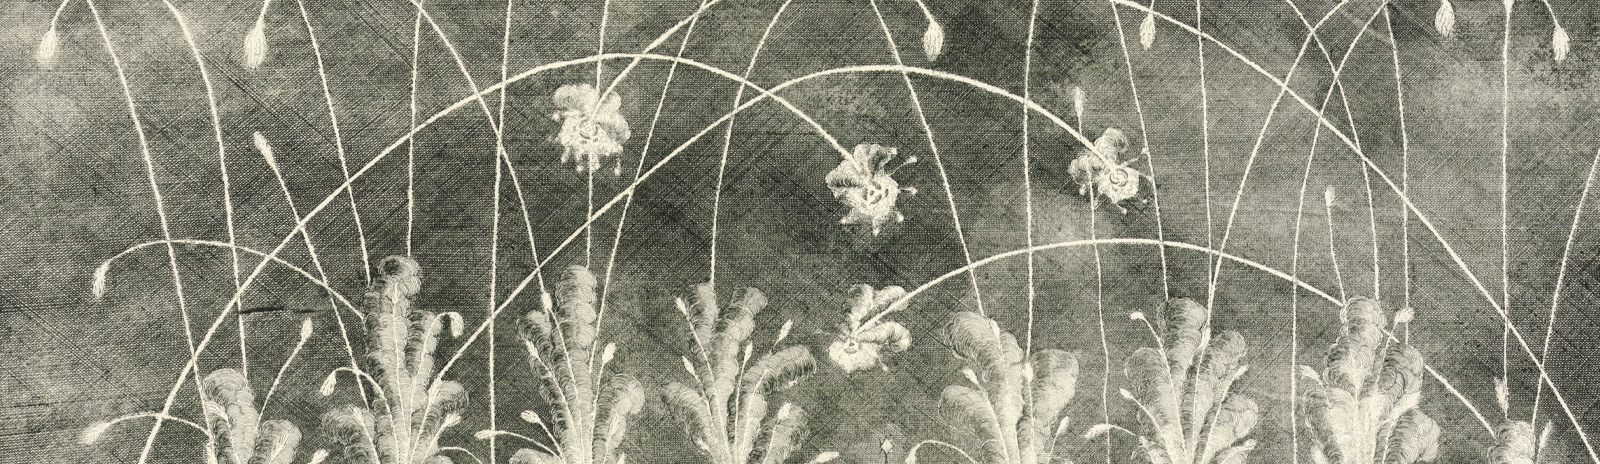 Фоновое изображение Перспективный план московского фейерверка 1724 г.